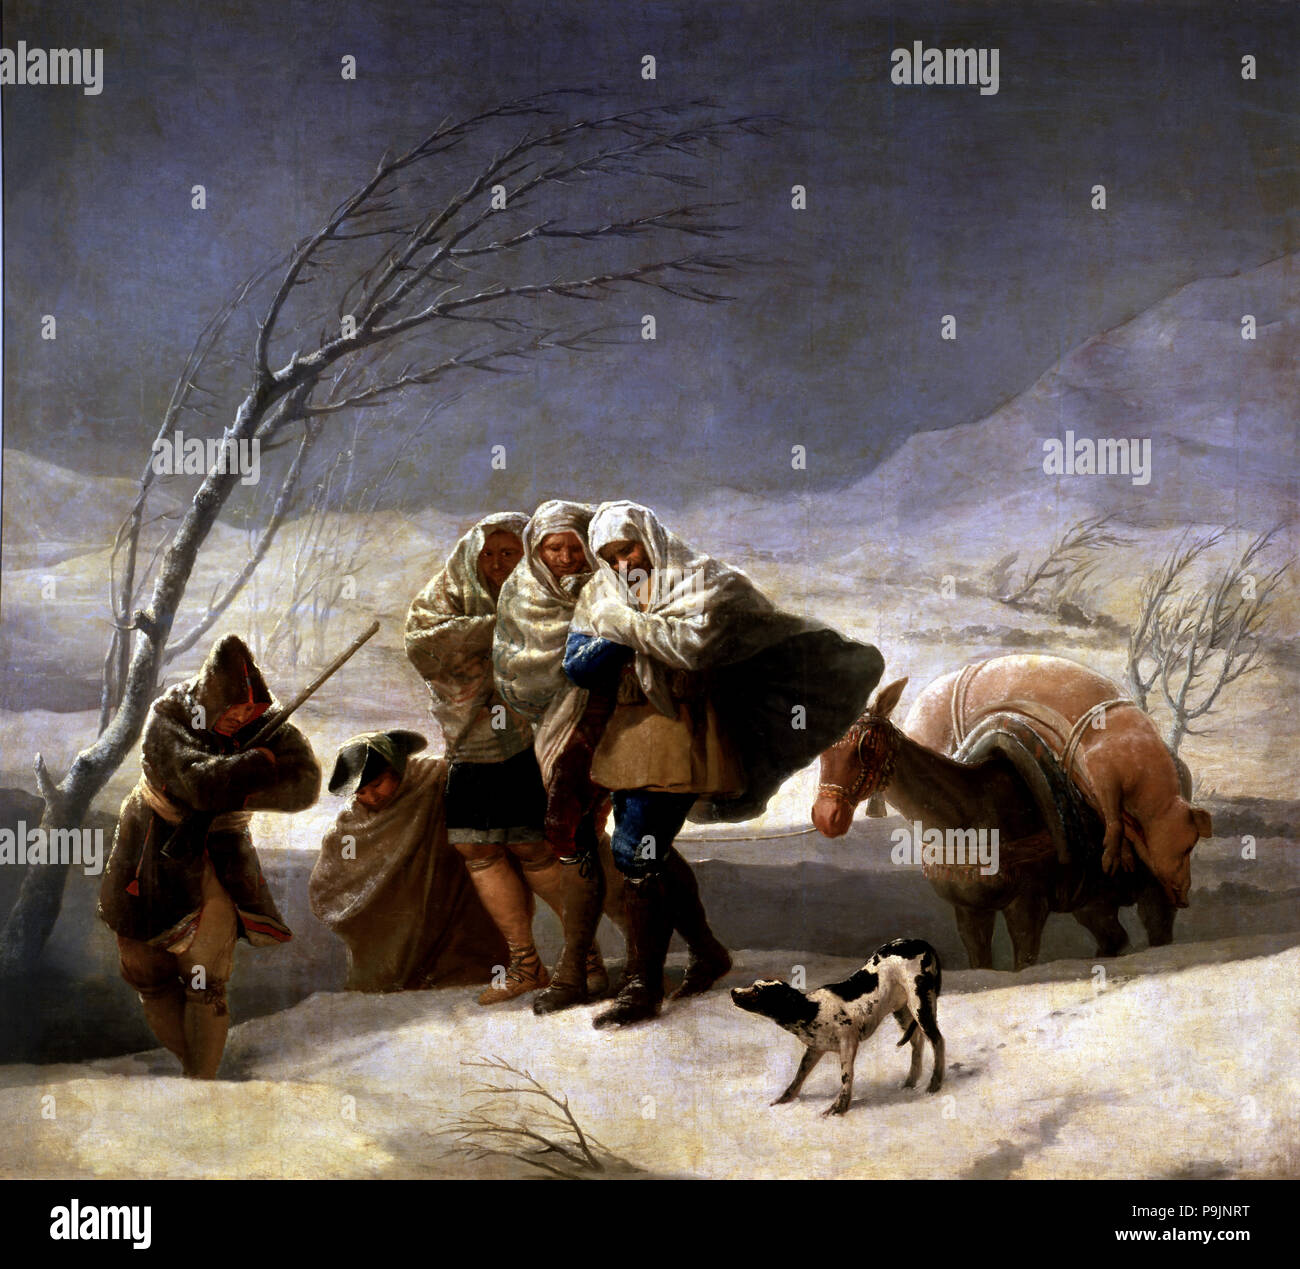 'La chute de neige ou d'hiver", 1786, huile sur toile de Francisco de Goya. Banque D'Images